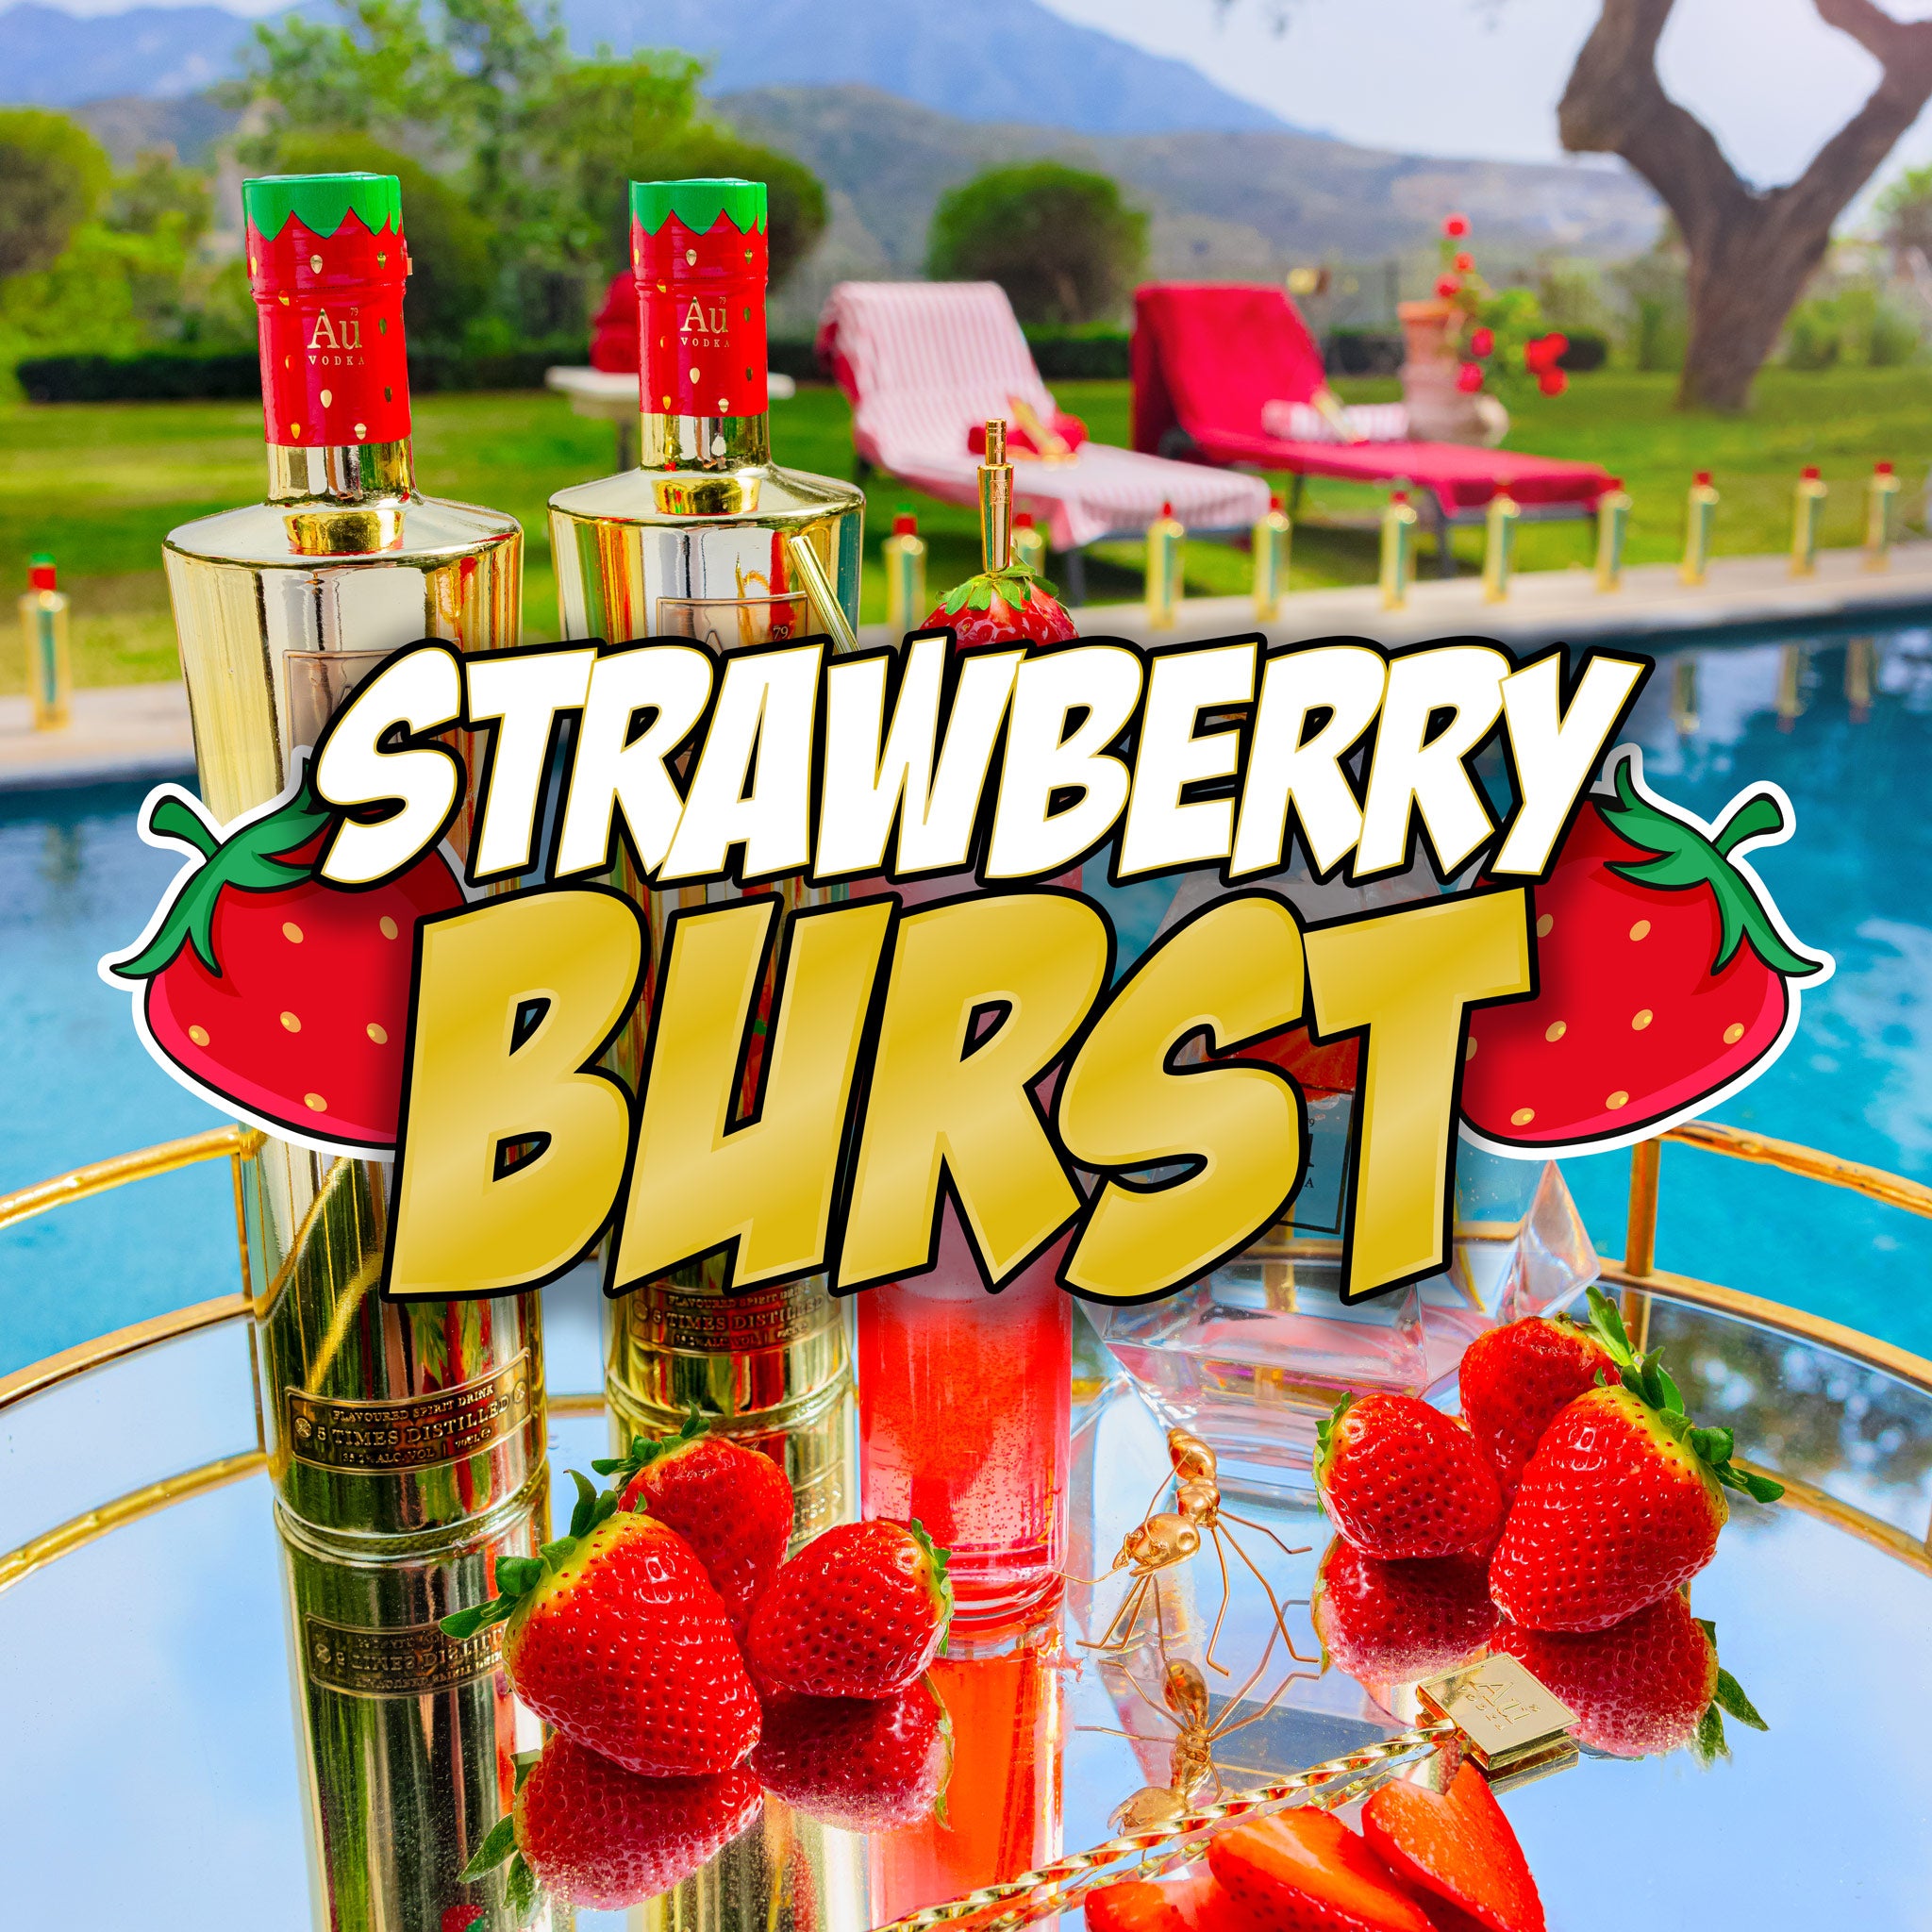 Strawberry Burst